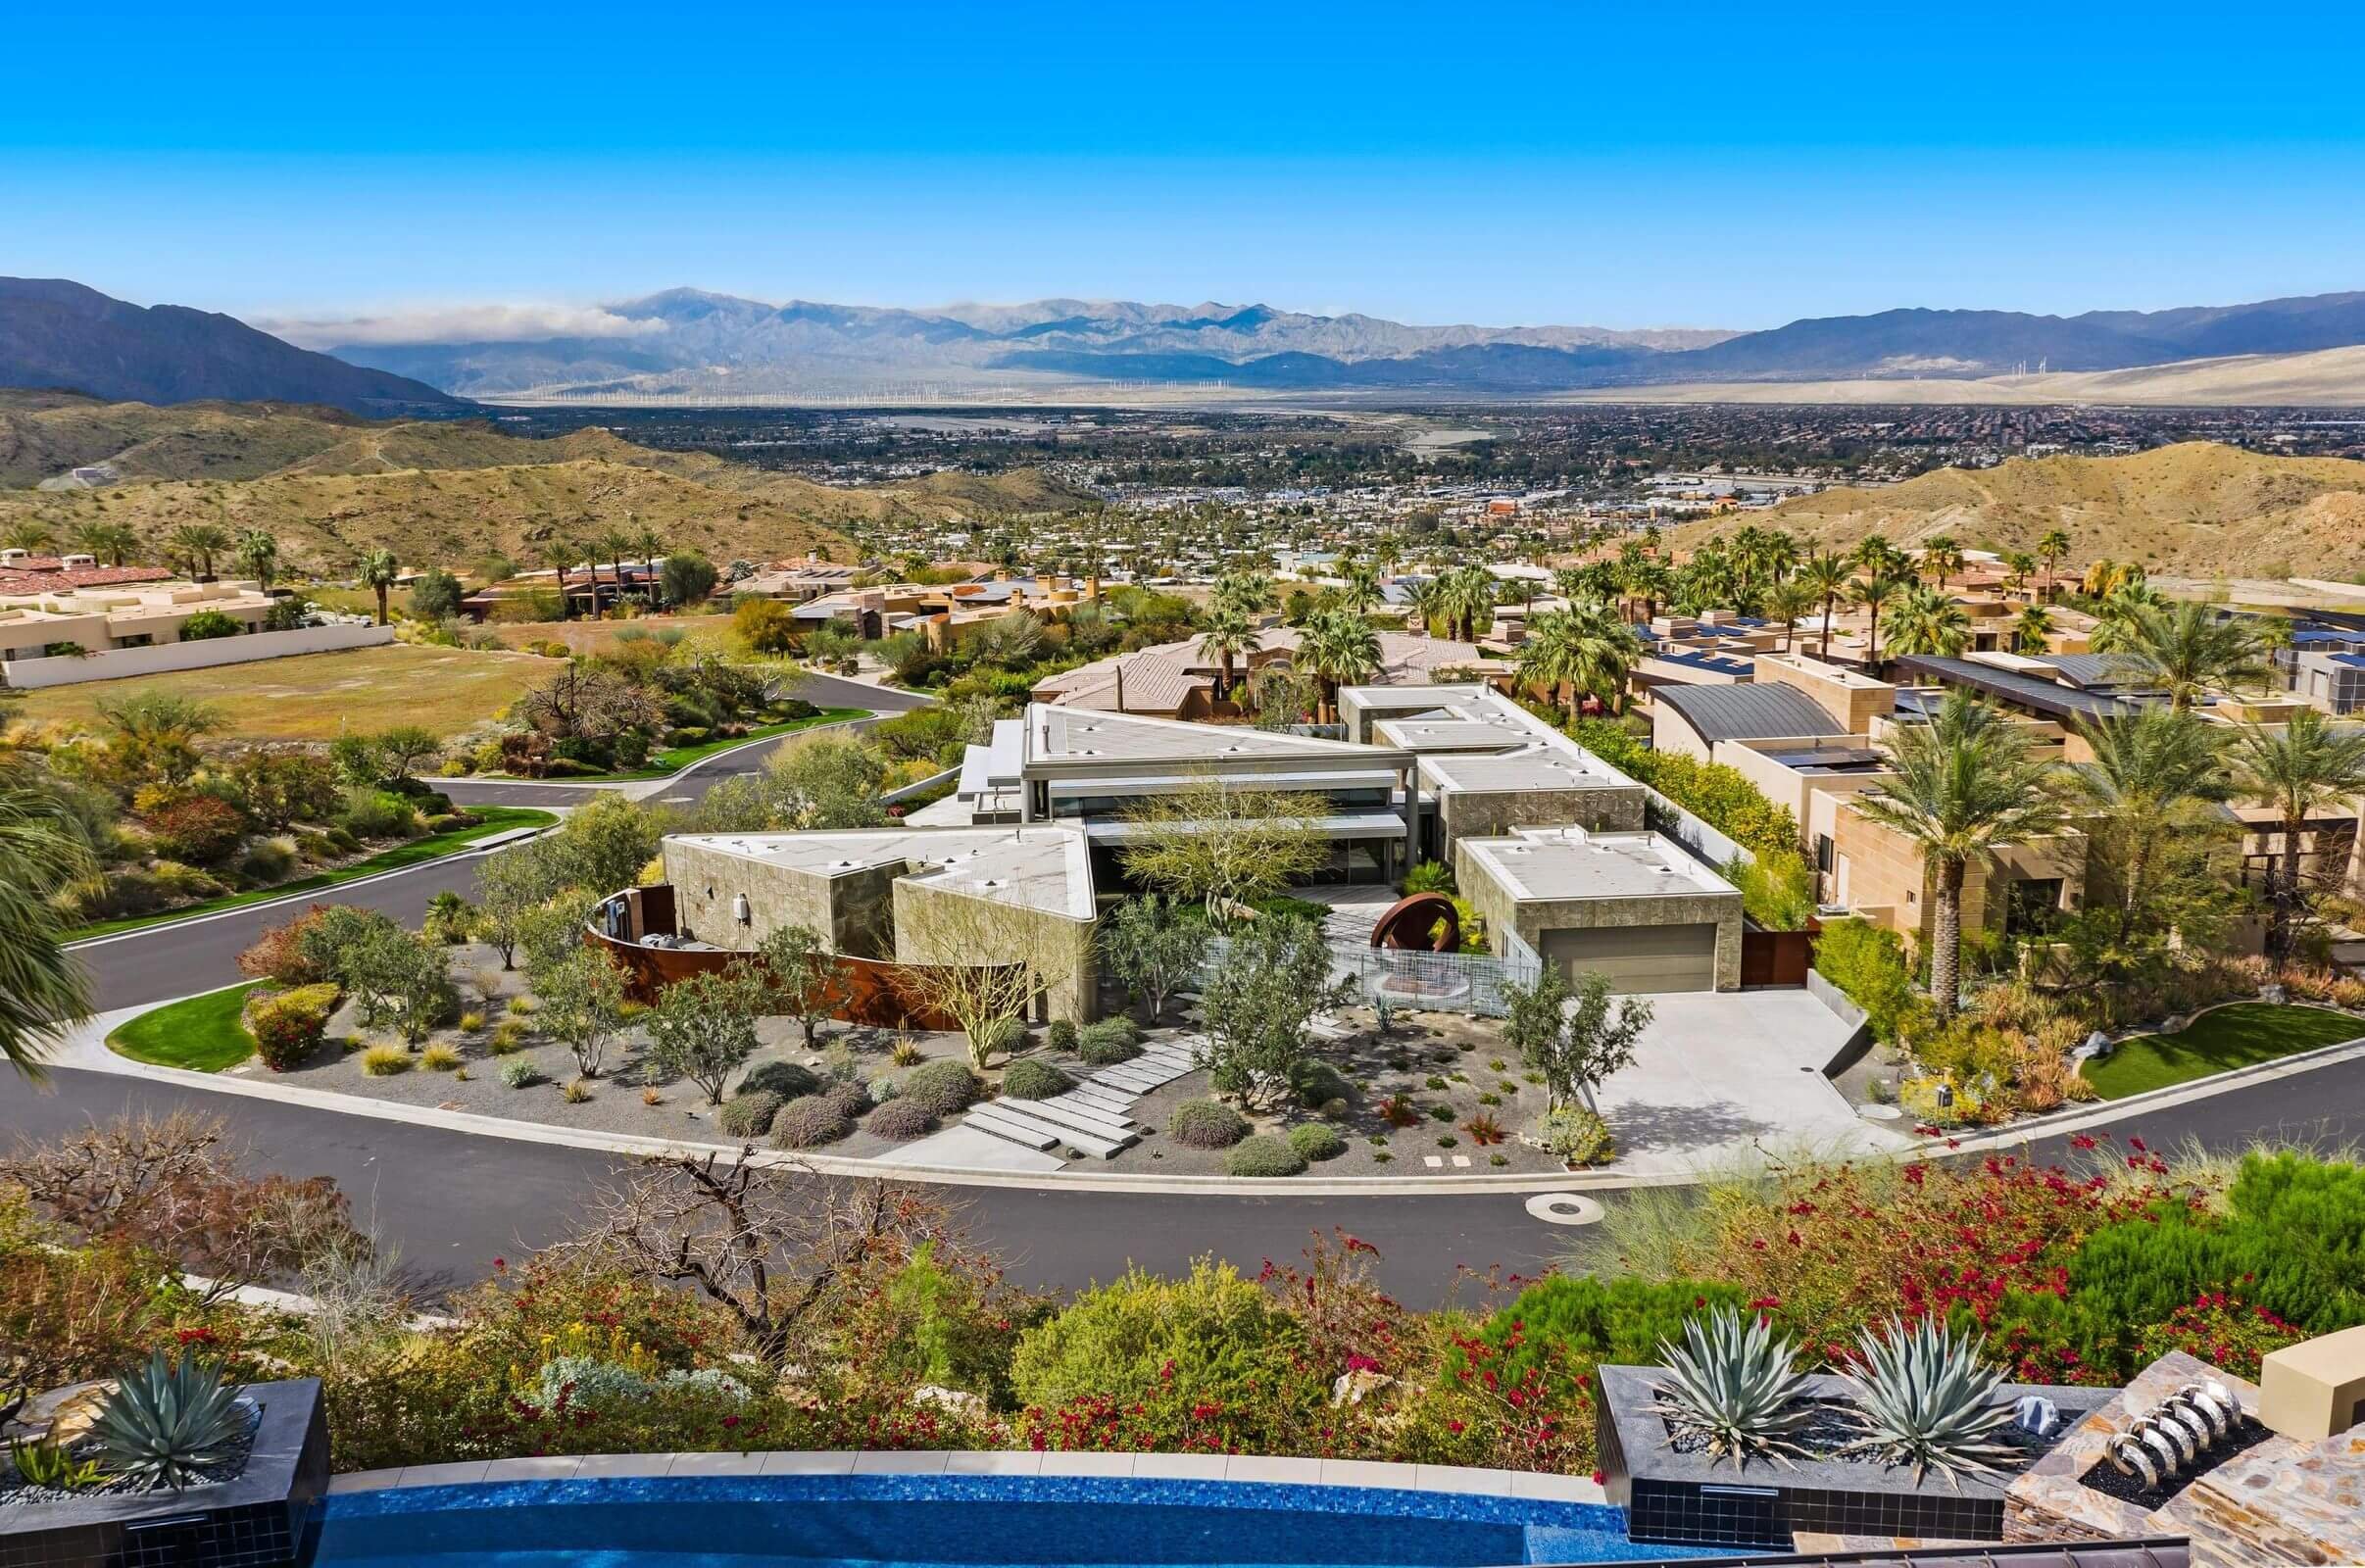 Mirada Estates Rancho Mirage 92270